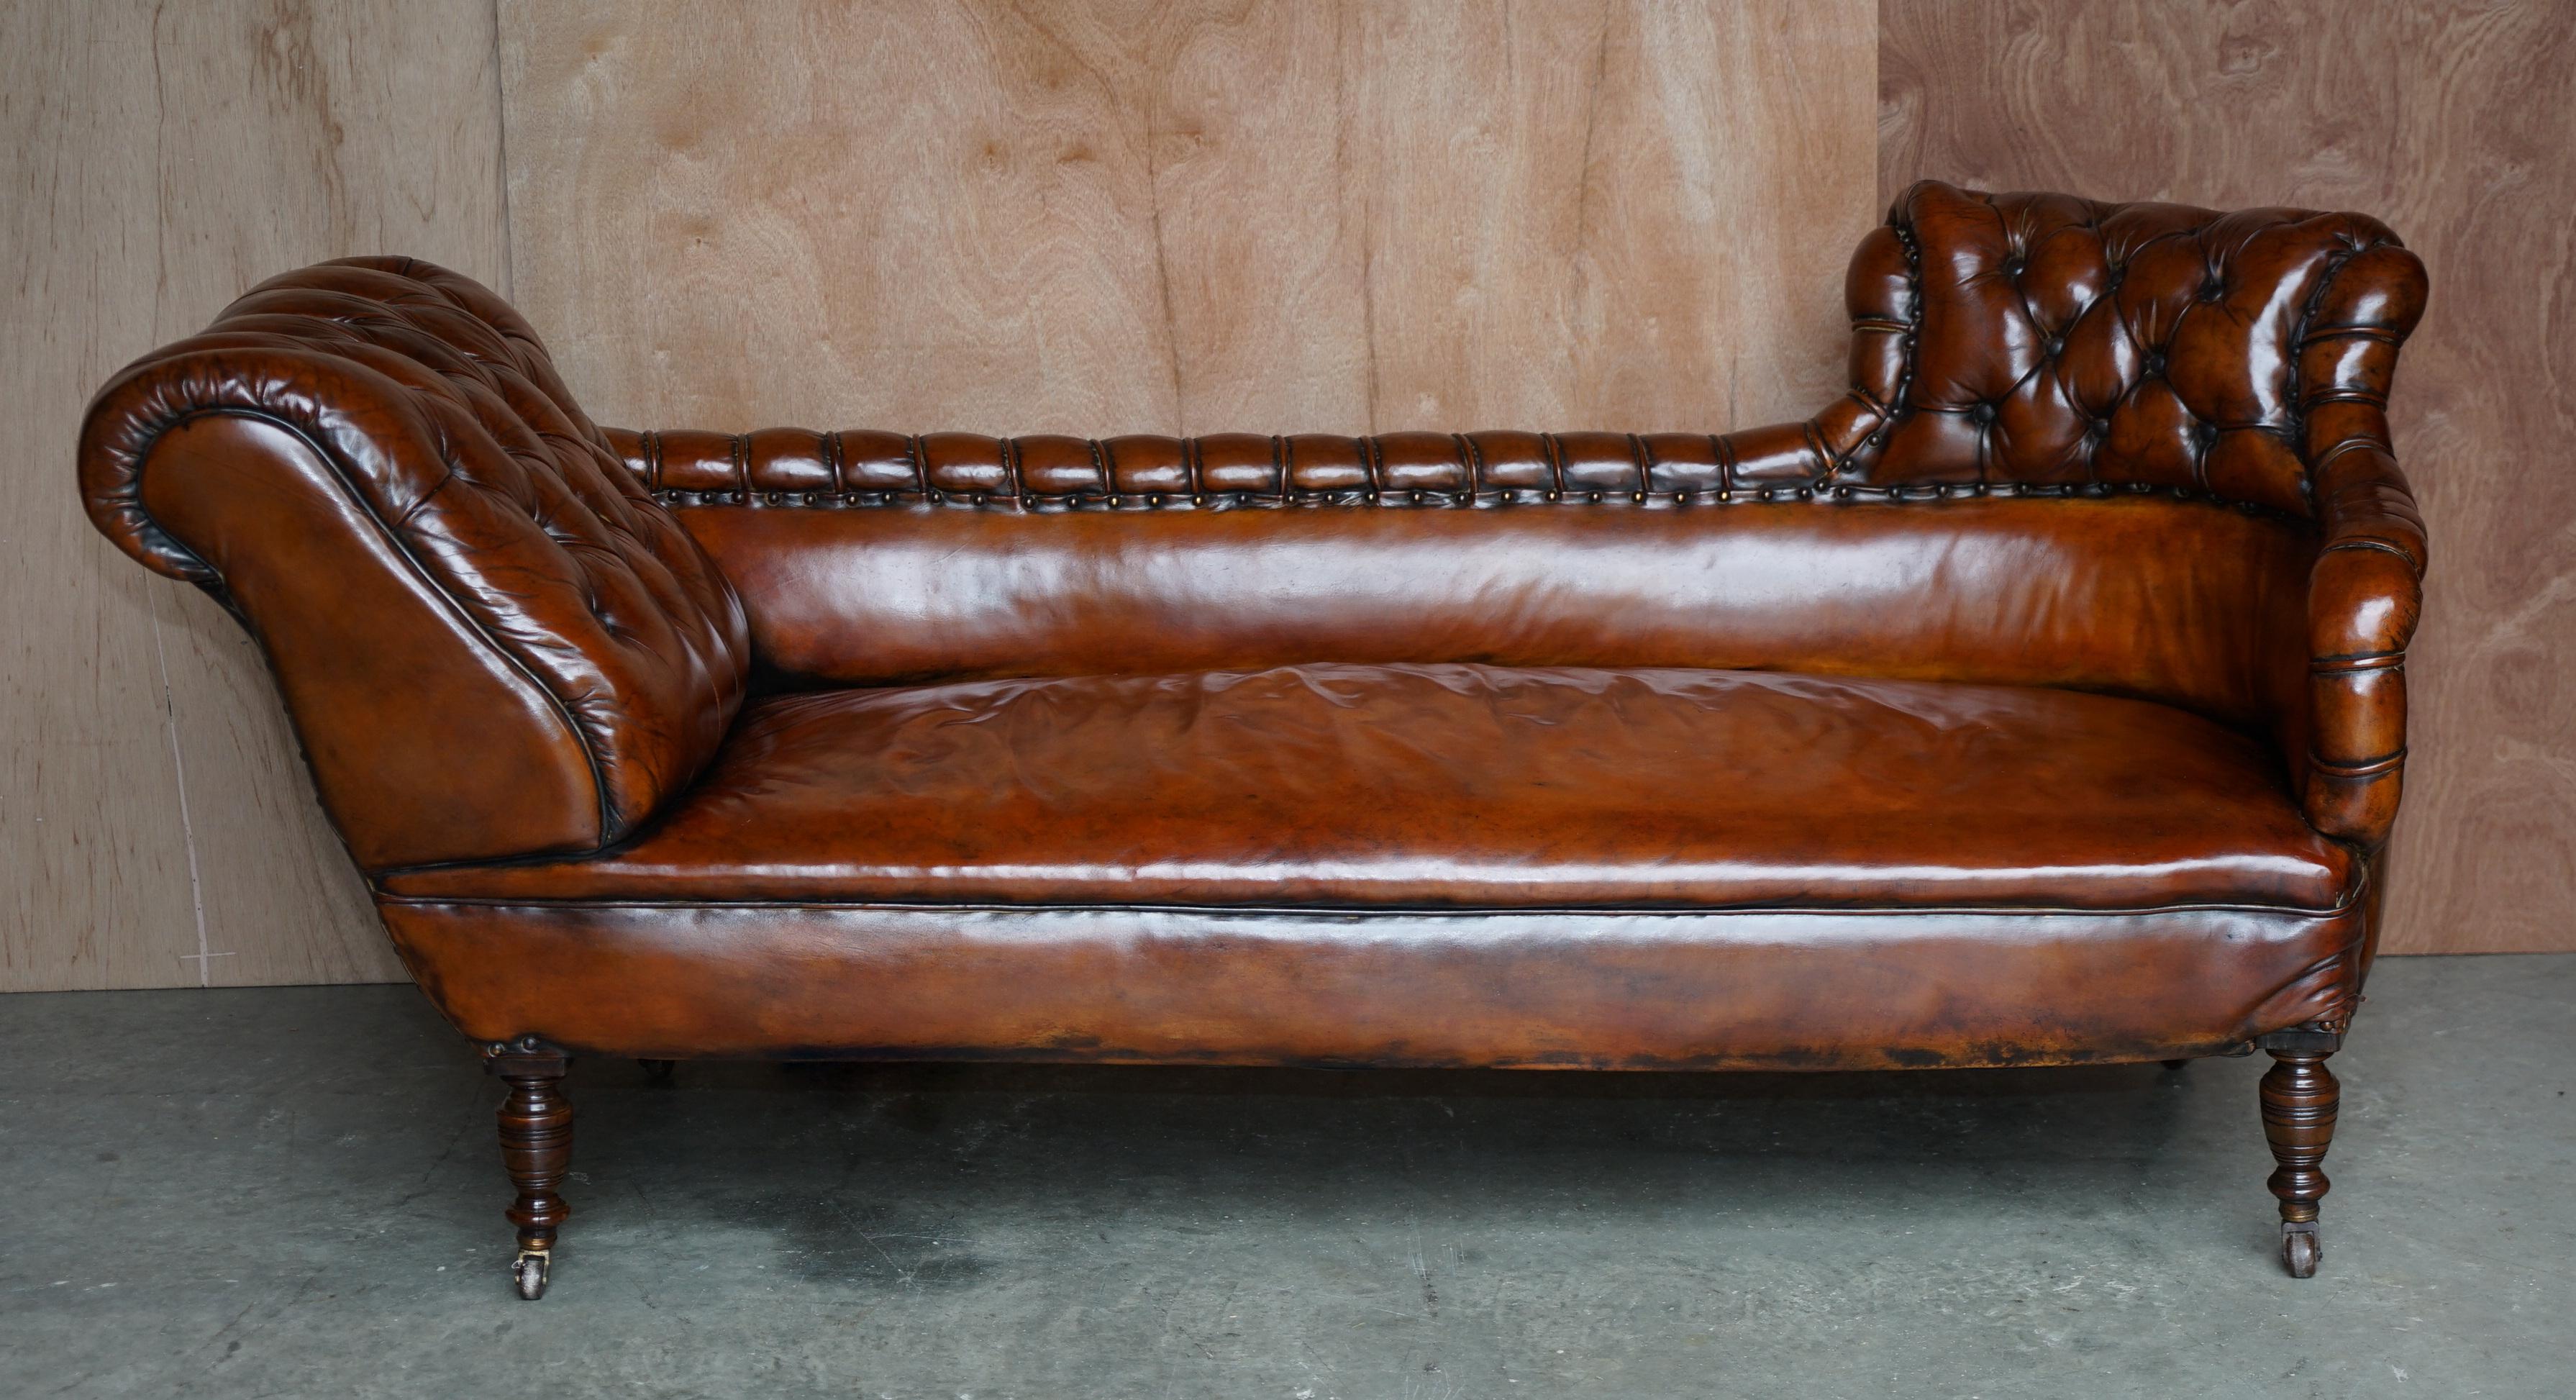 Nous sommes ravis d'offrir ce très rare canapé Chesterfield touffeté chaise lounge entièrement restauré en cuir brun whisky.

Un exemple très rare, je n'ai jamais vu ce dos avant, il s'agit d'une pièce anglaise mais qui a un côté très continental.